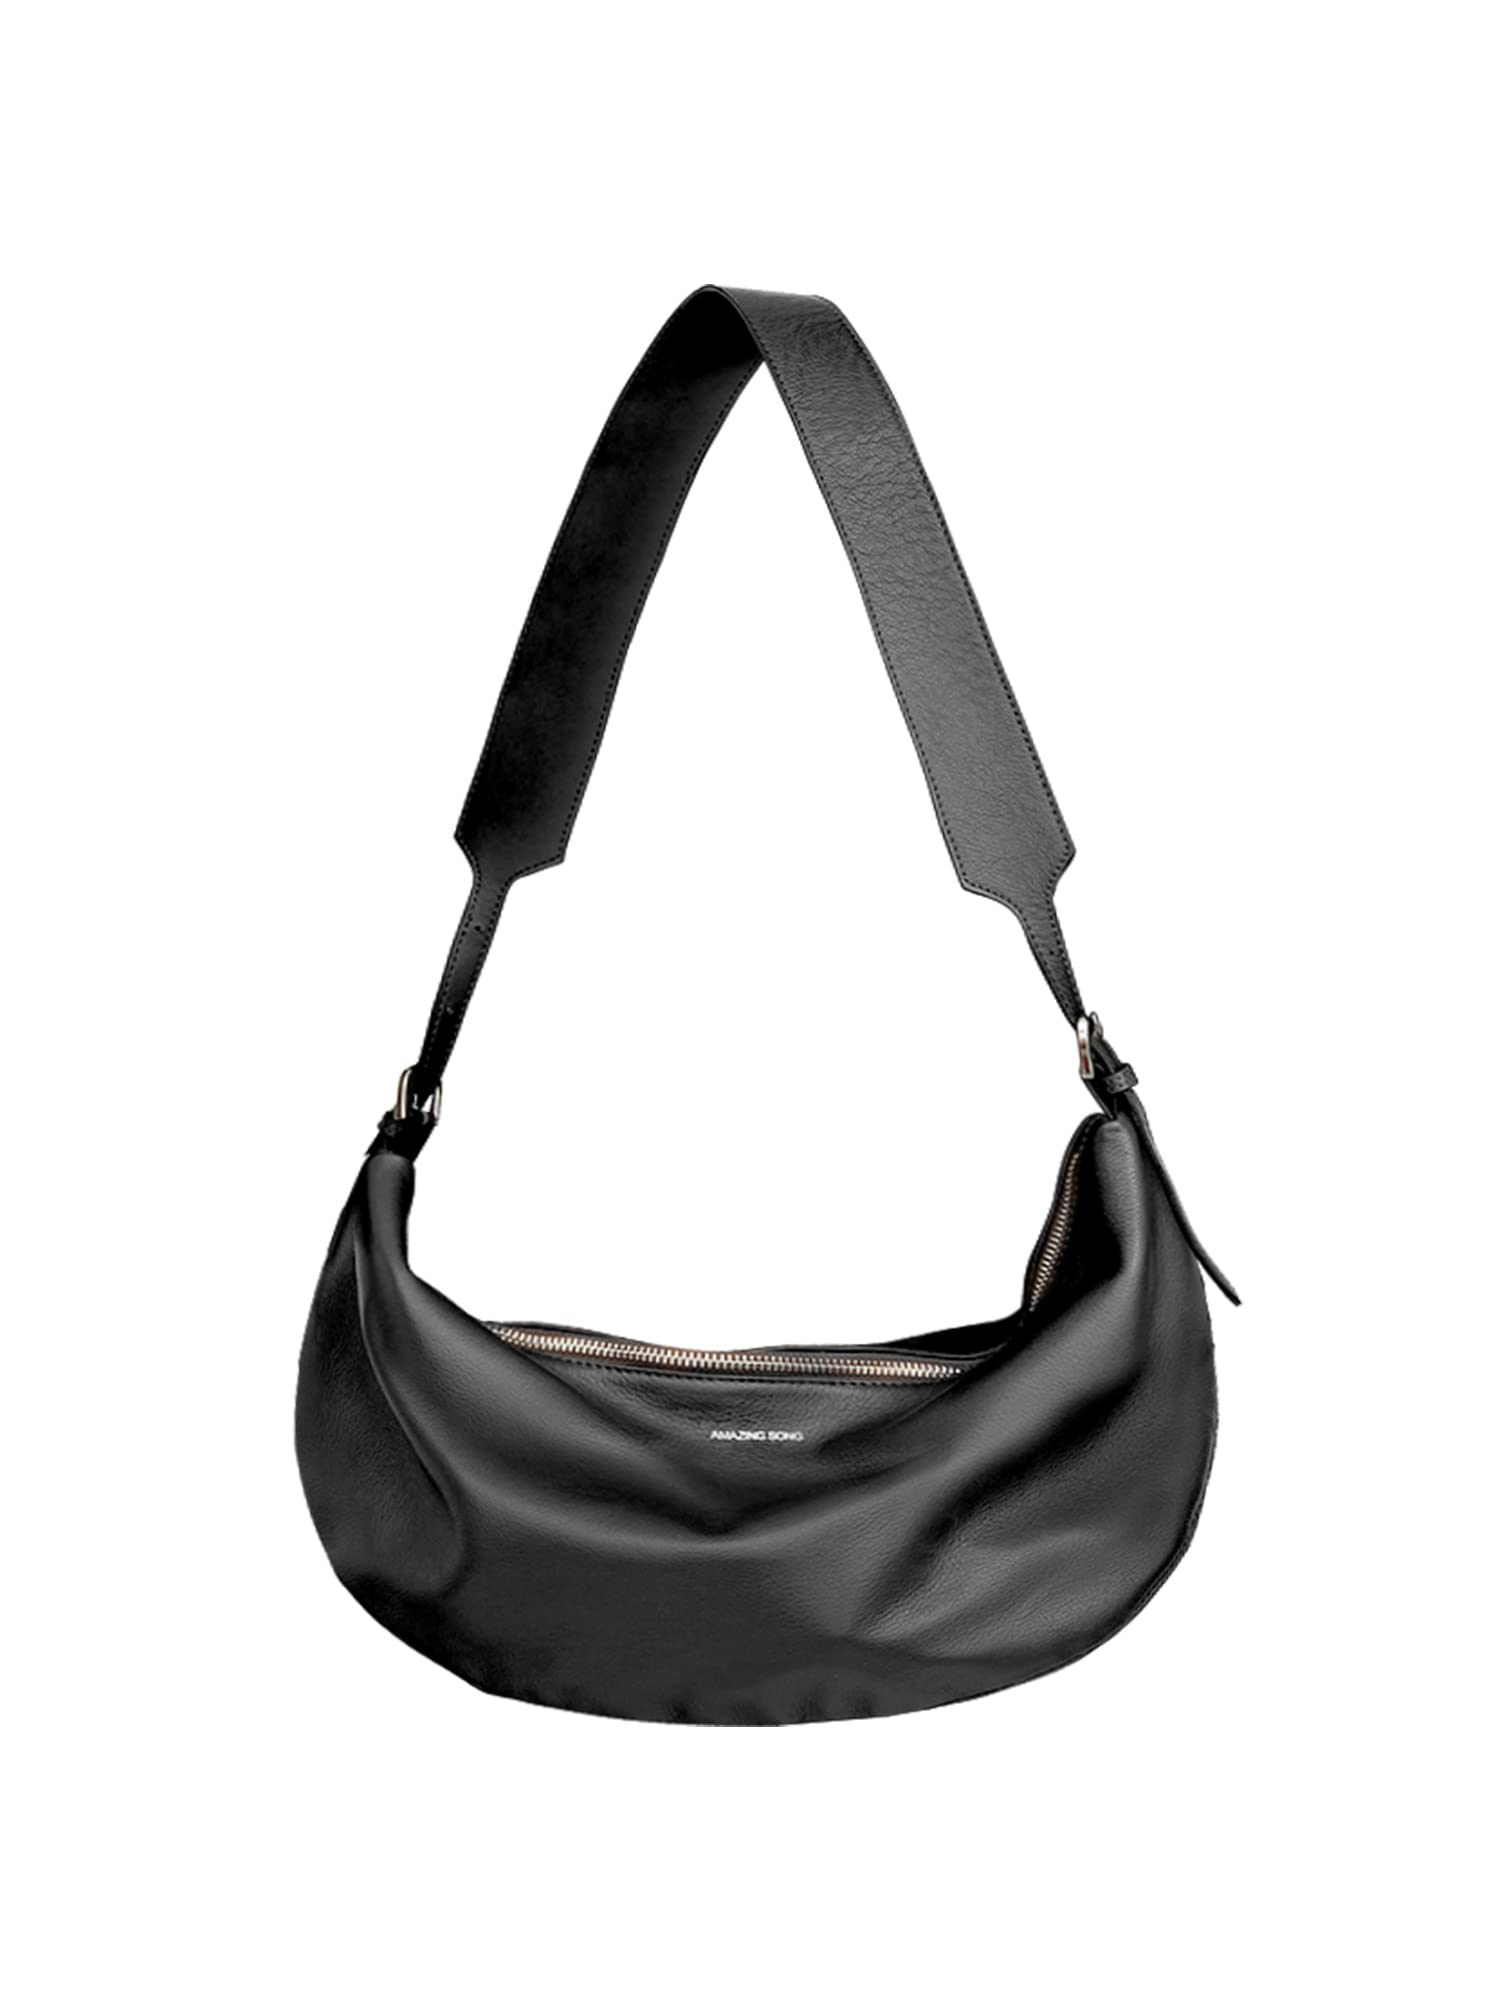 送料無料Amazing Song Crossbody Bag for Women Top Grade Leather Hobo Sling Croissant Half Moon Shoulder Bag Black並行